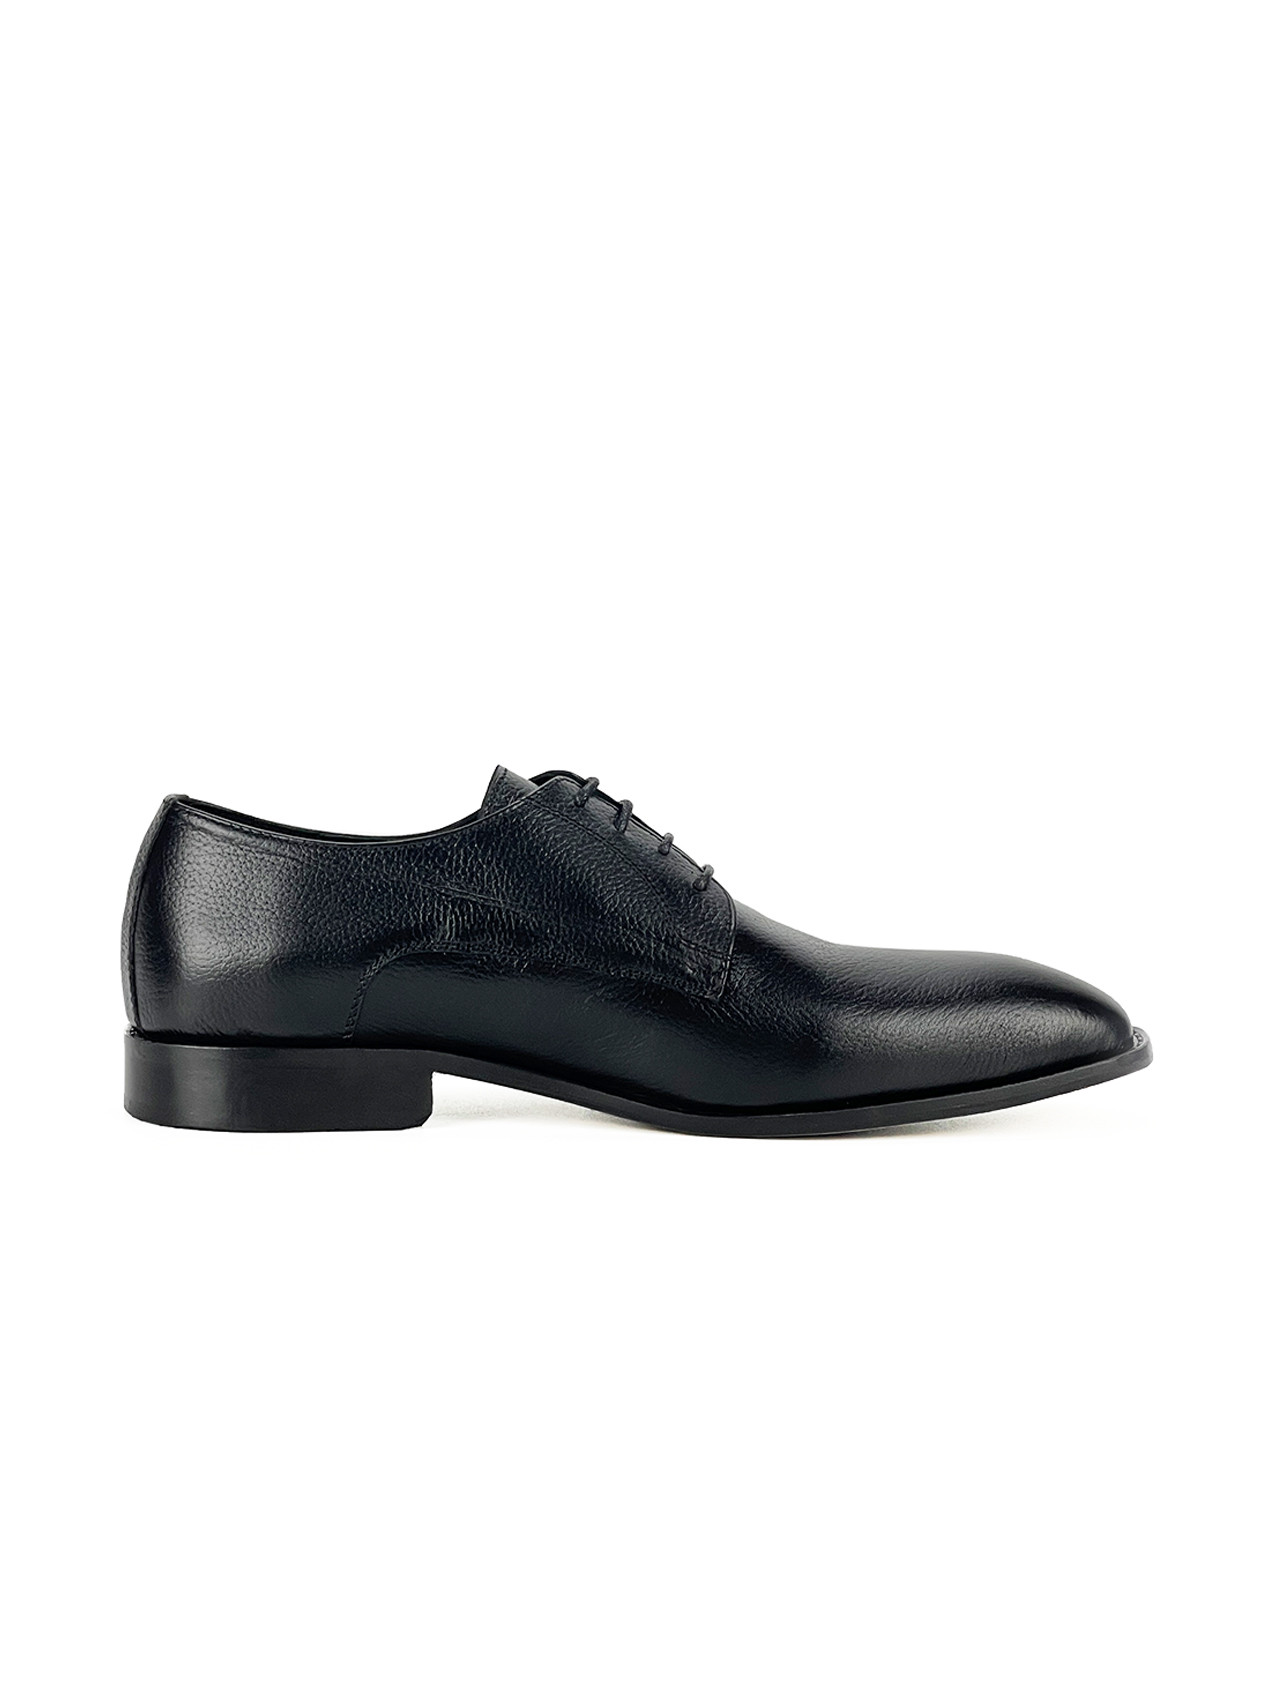 Chaussure hommes MT 100% CUIR, 39, Noir